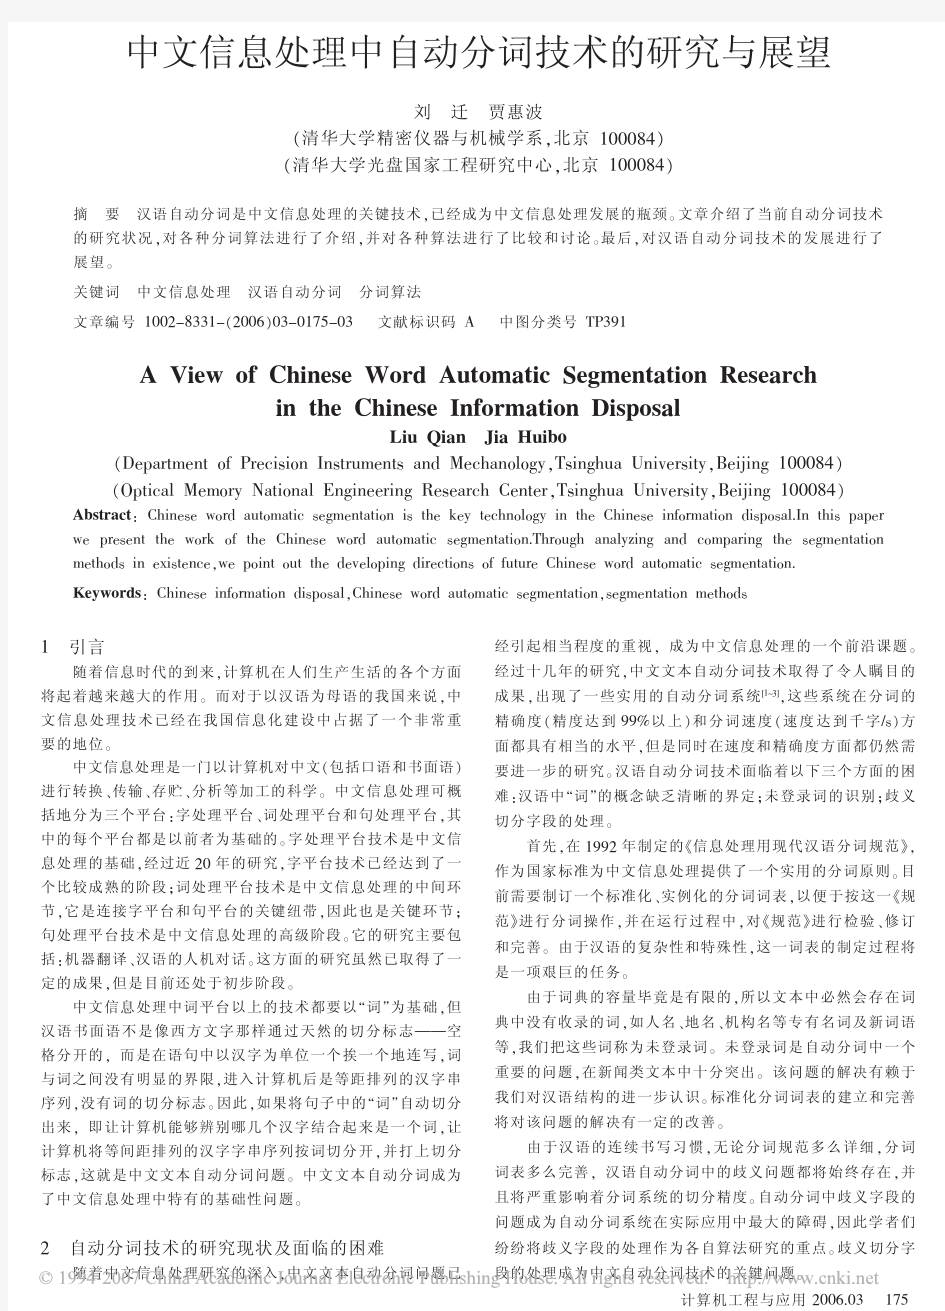 中文信息处理中自动分词技术的研究与展望